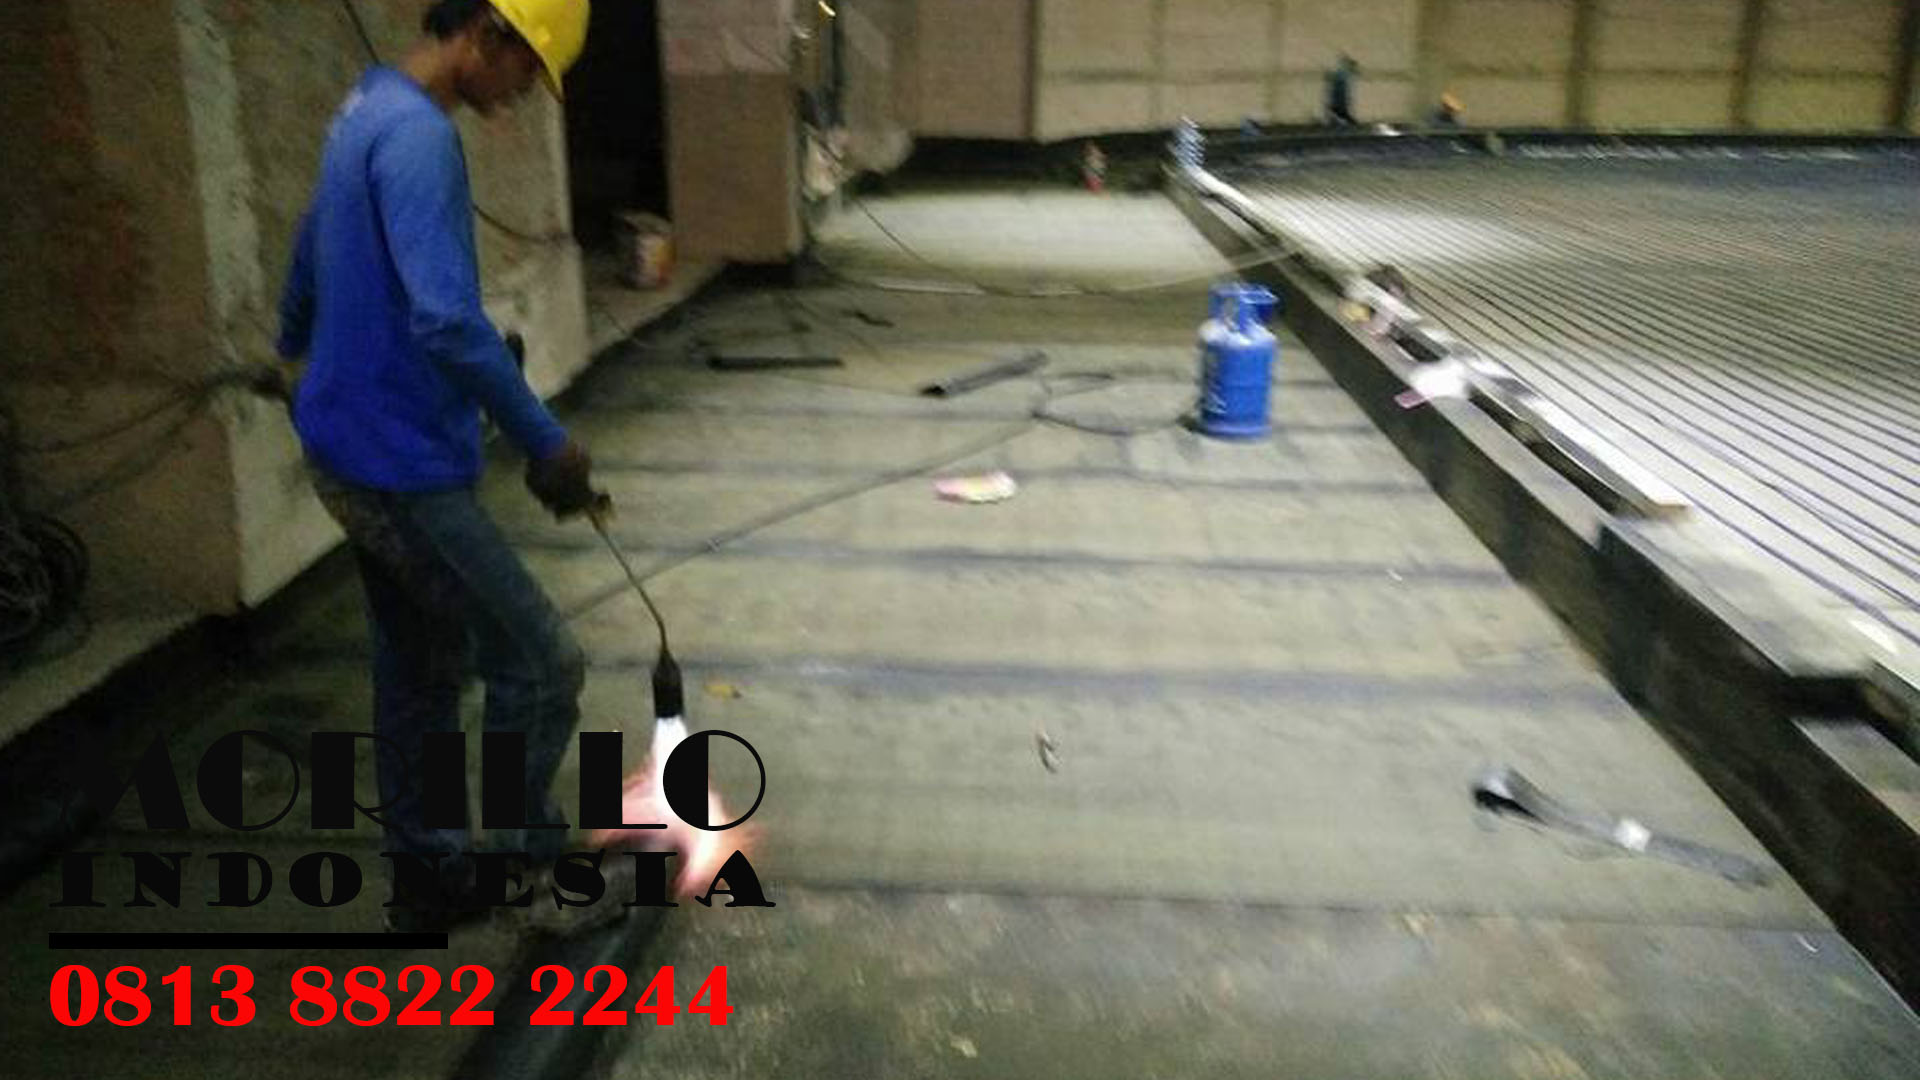 pasang waterproofing coating per meter di Kota SERANG : Call Kami – 0813-8822-2244